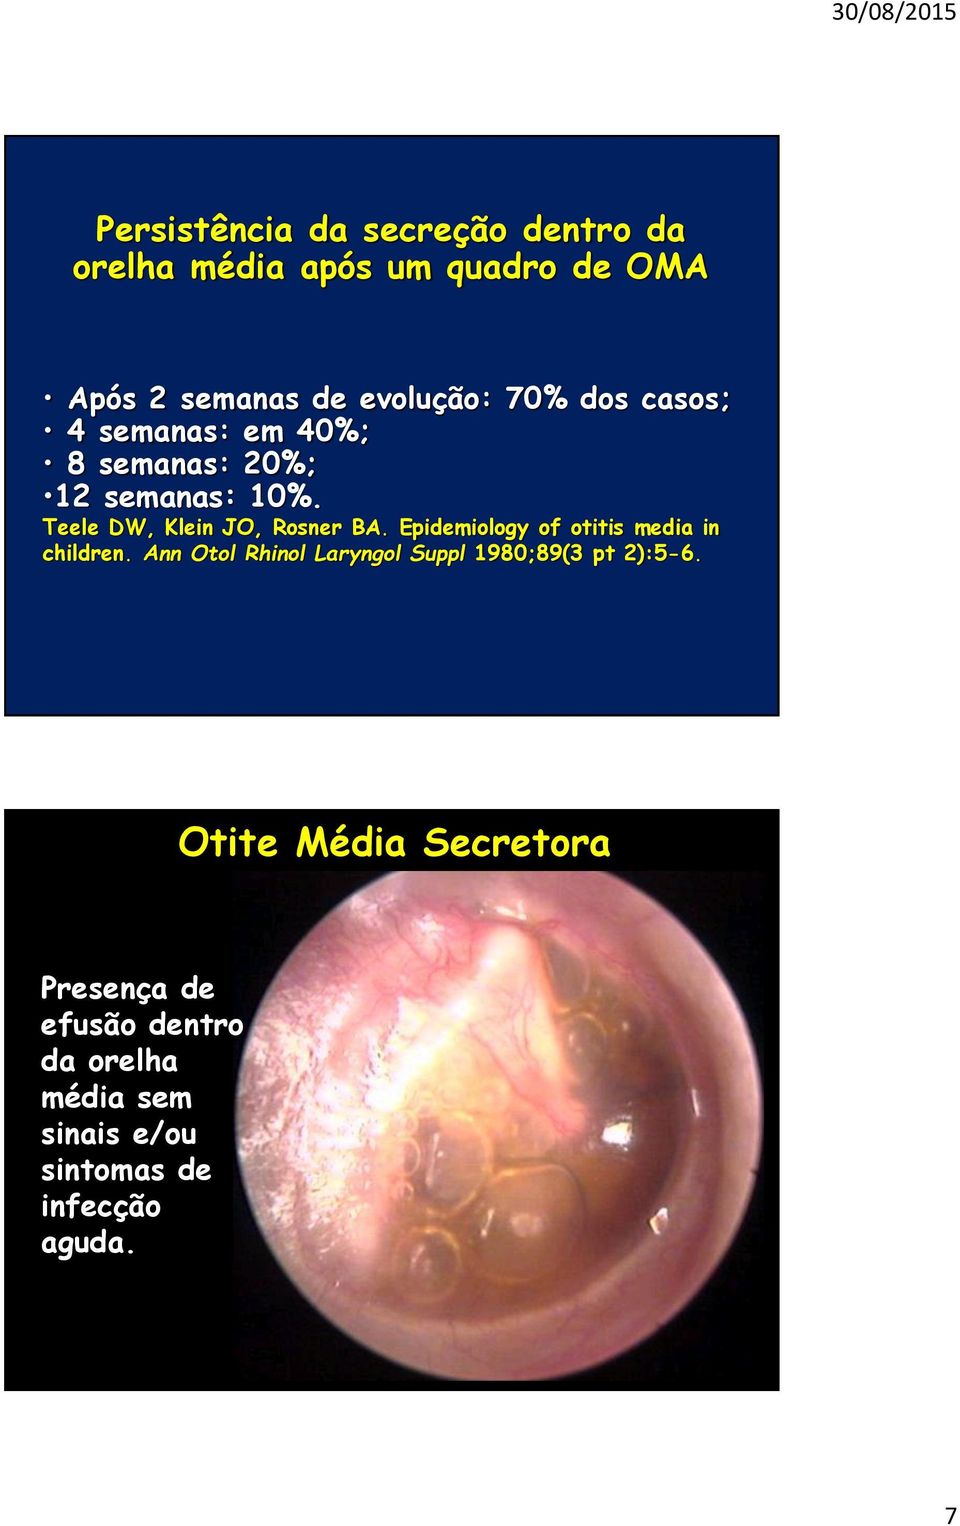 Epidemiology of otitis media in children. Ann Otol Rhinol Laryngol Suppl 1980;89(3 pt 2):5-6.